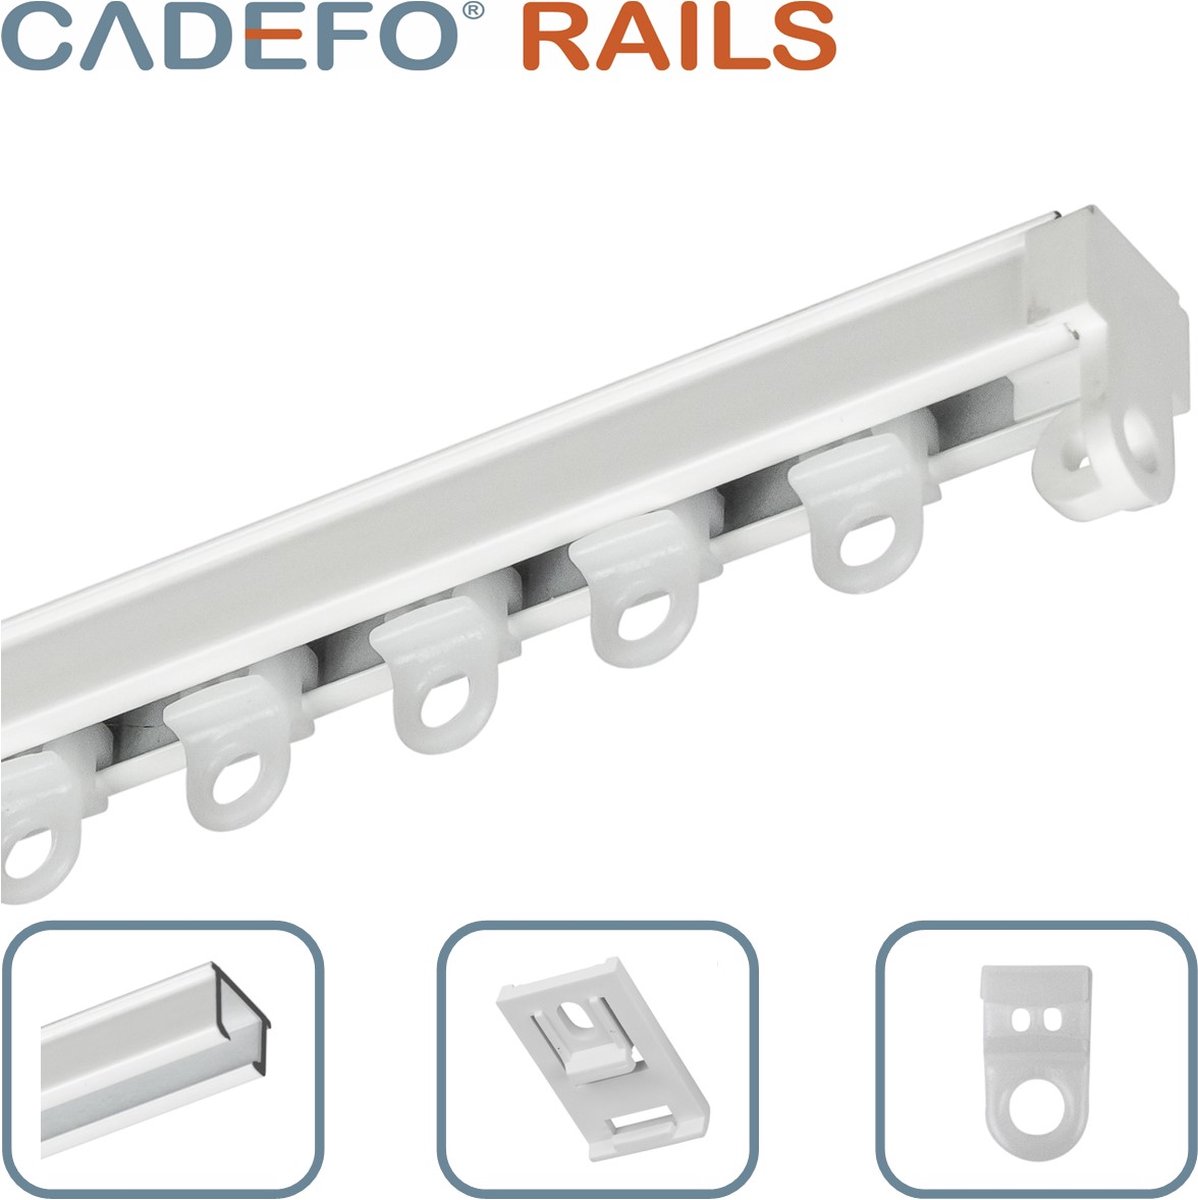 CADEFO RAILS (451 - 500 cm) Gordijnrails - Compleet op maat! - UIT 1 STUK - Leverbaar tot 6 meter - Plafondbevestiging - Lengte 452 cm